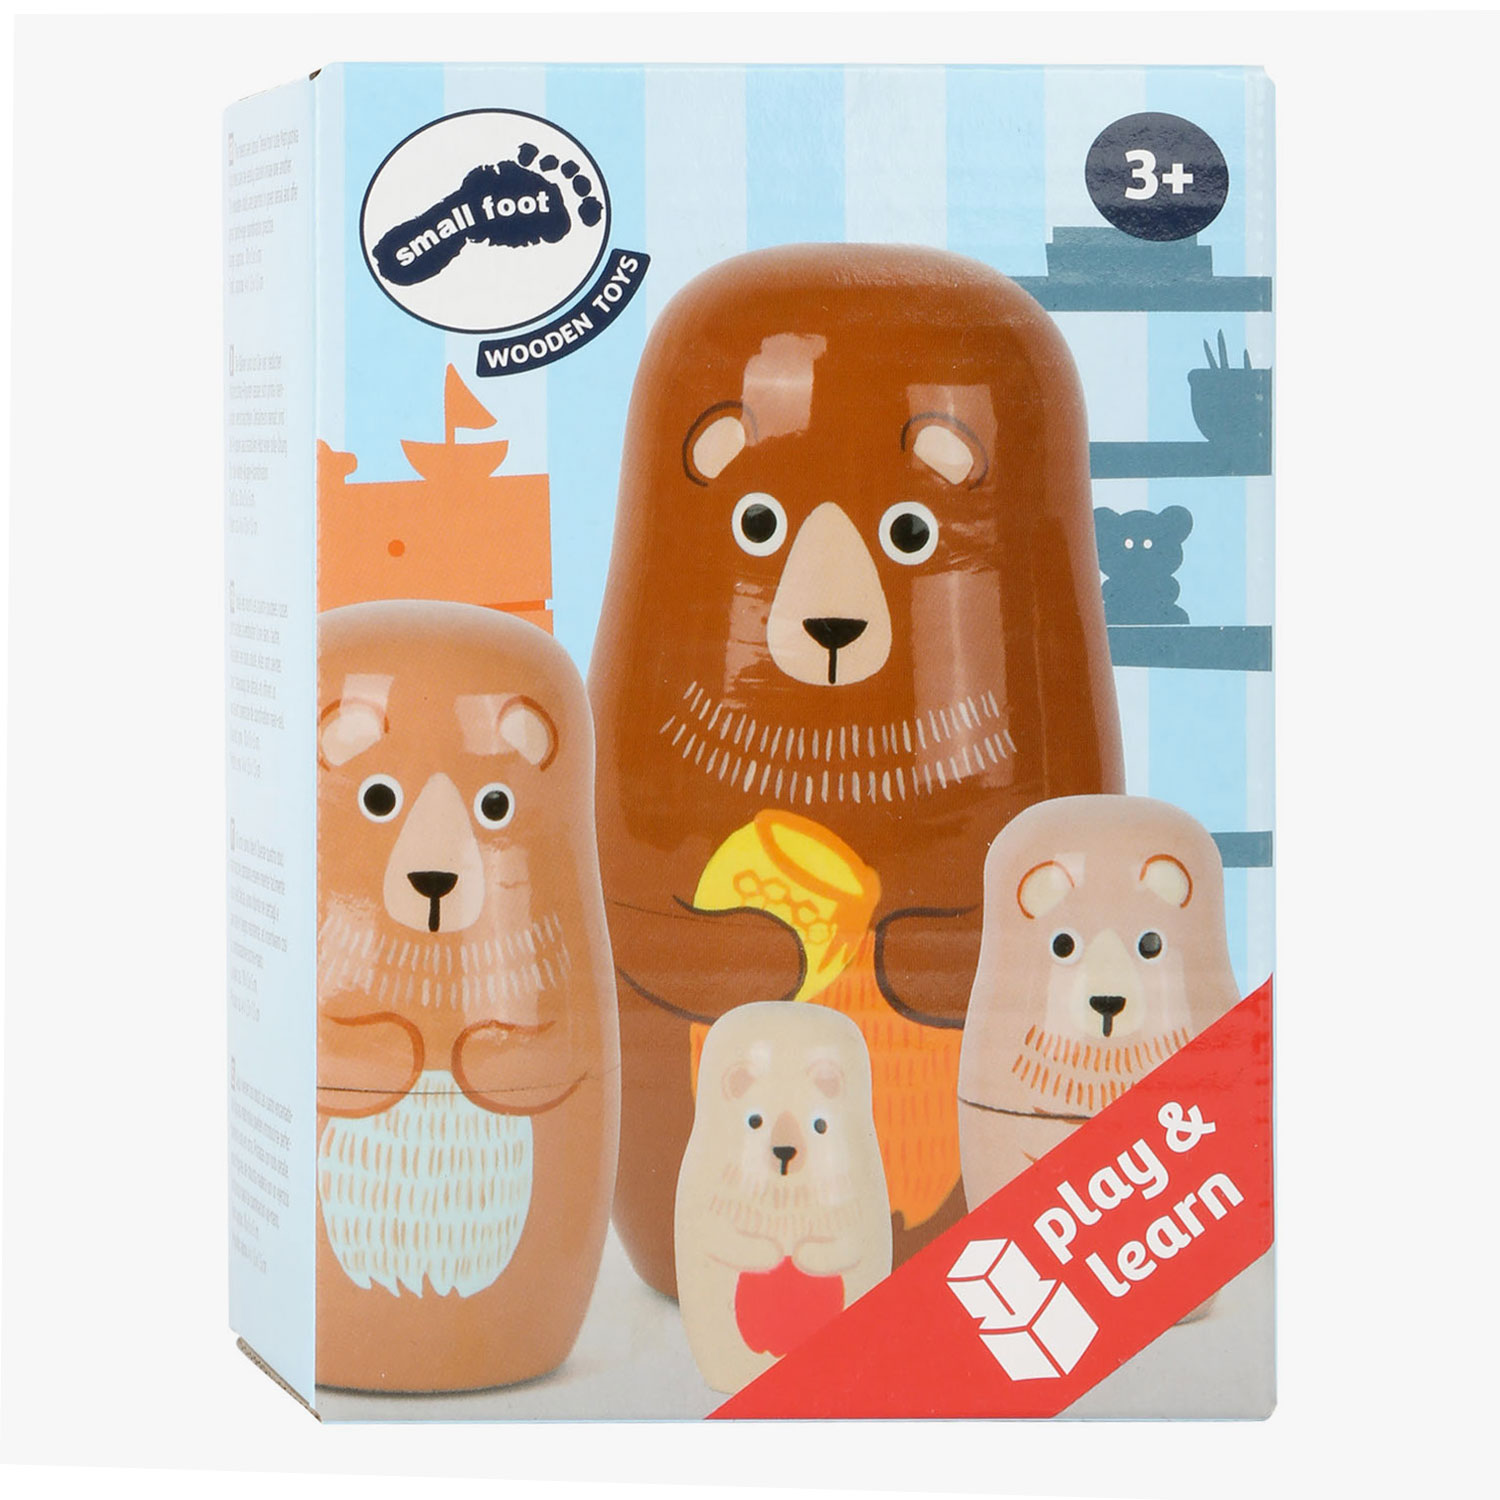 Small Foot - Holz-Matroschka-Puppe Bärenfamilie